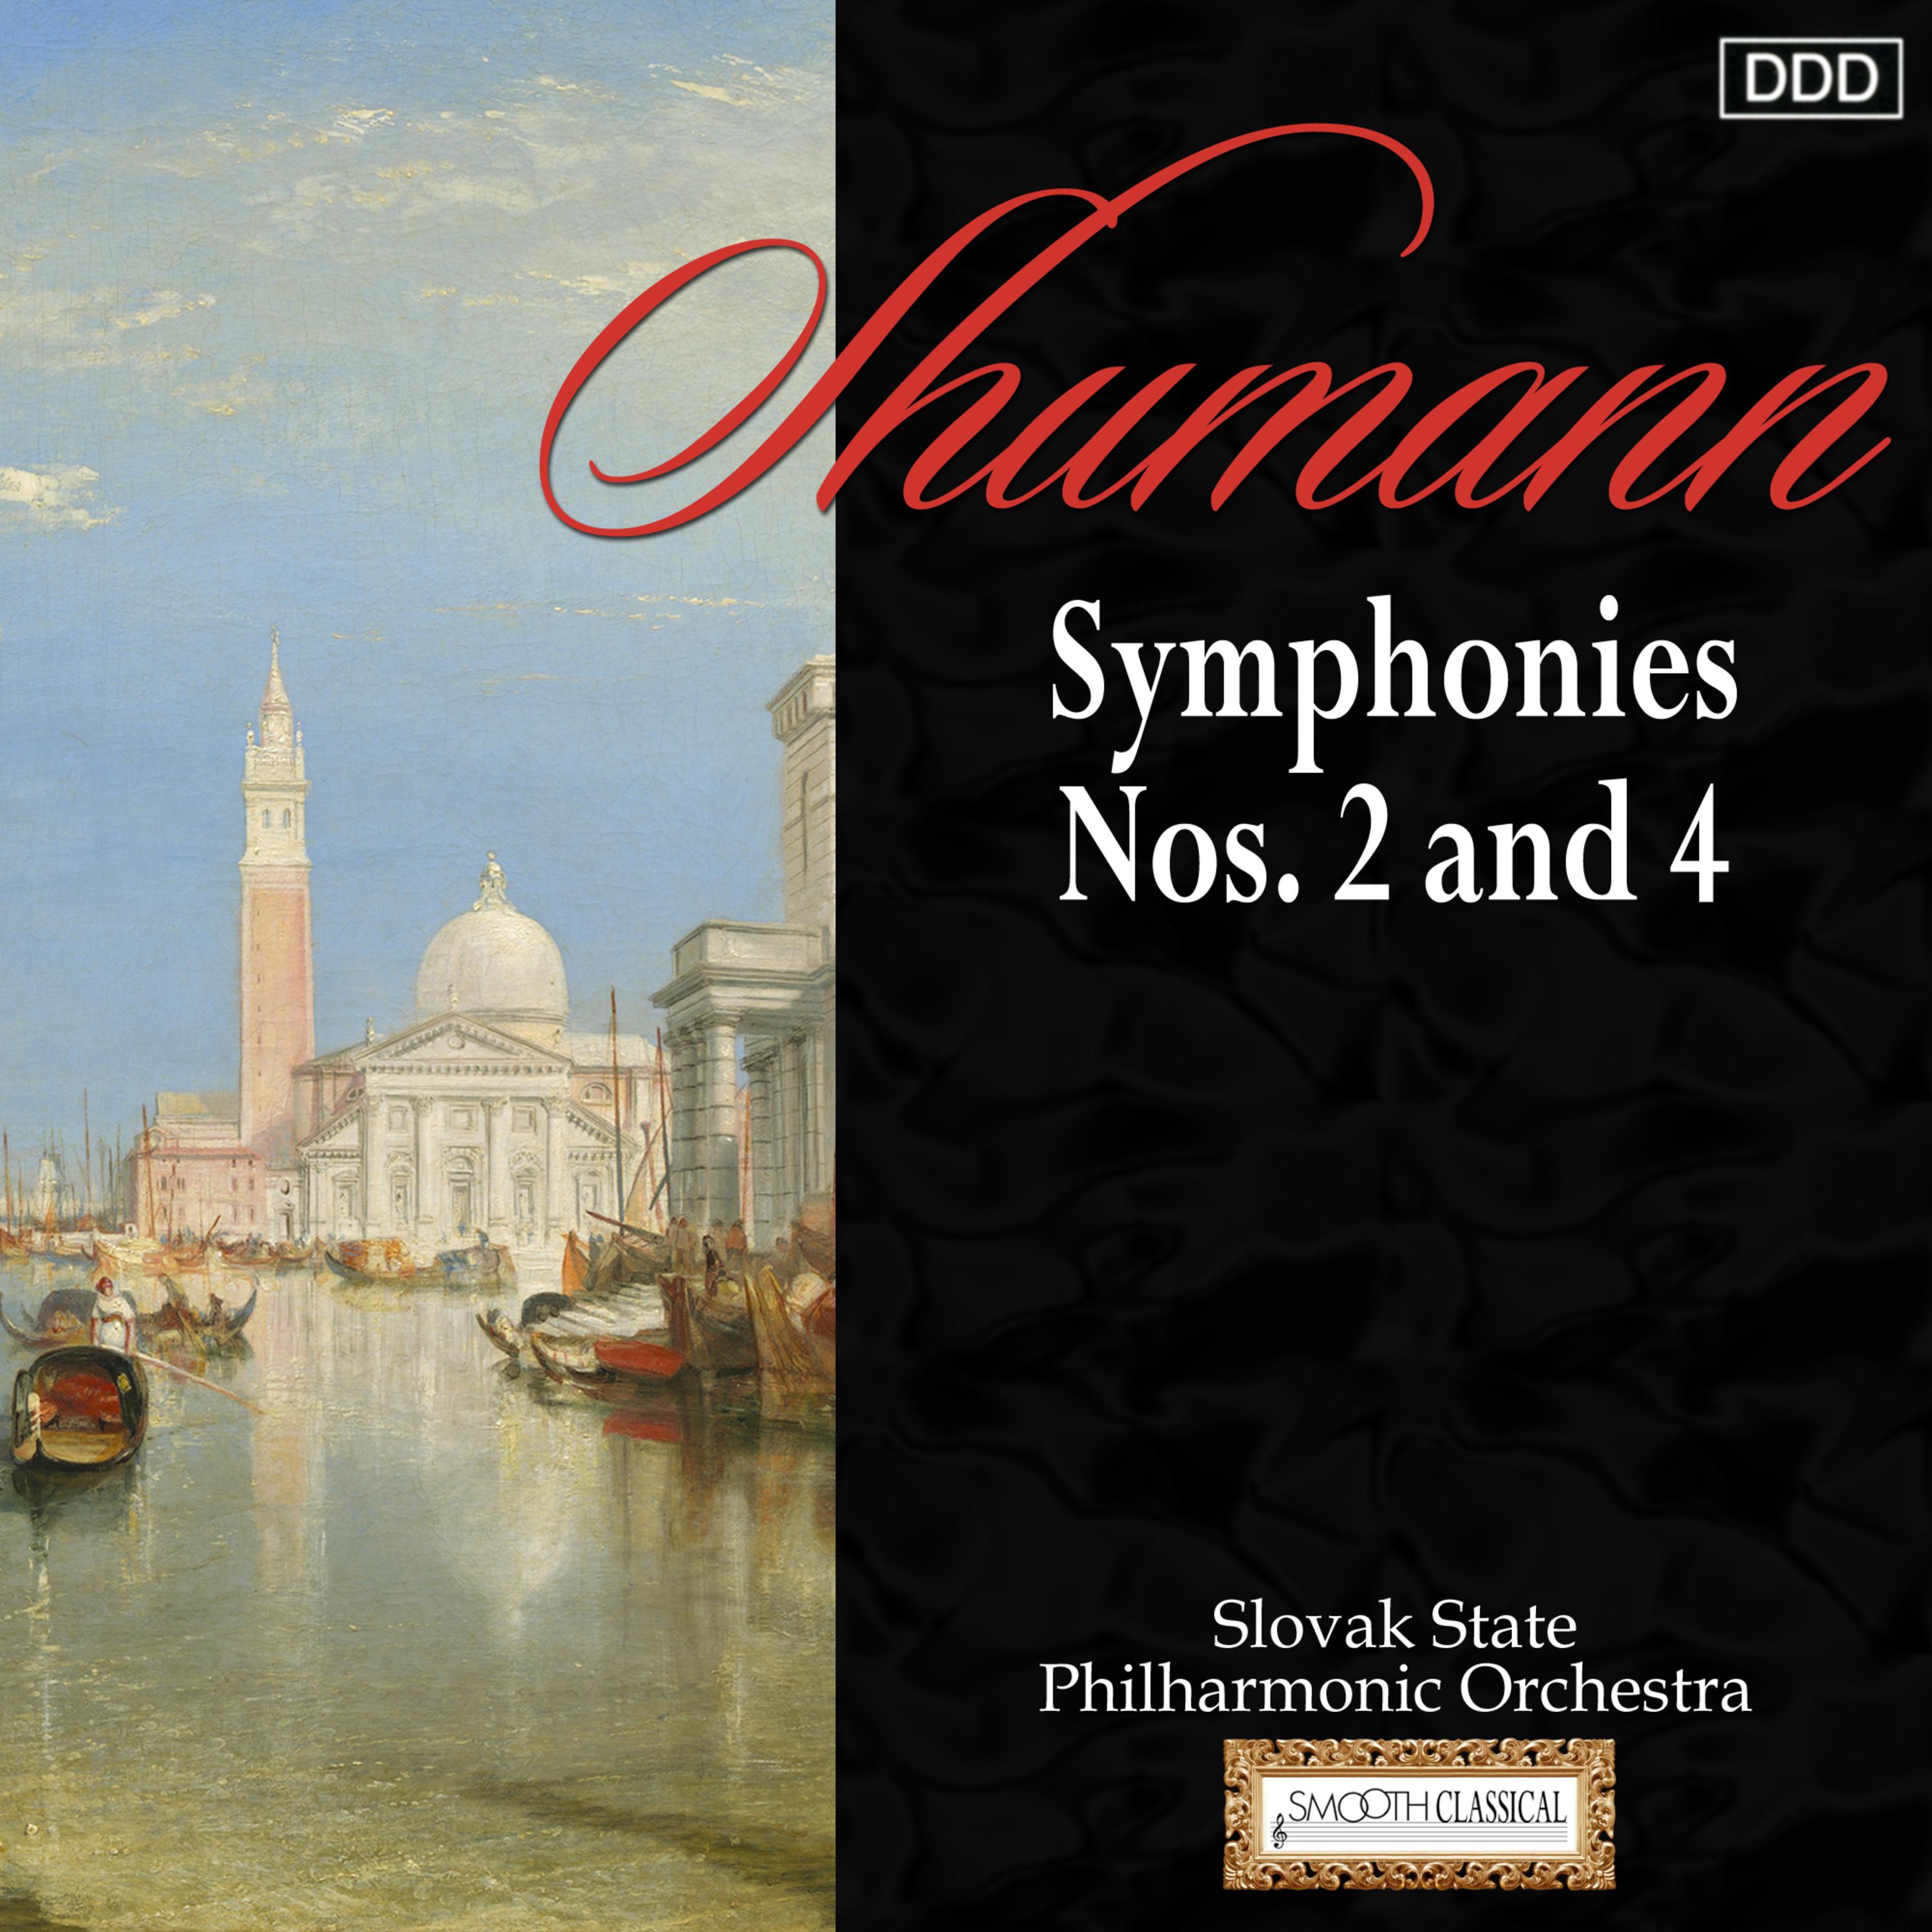 Symphony No. 4 in D Minor, Op. 120